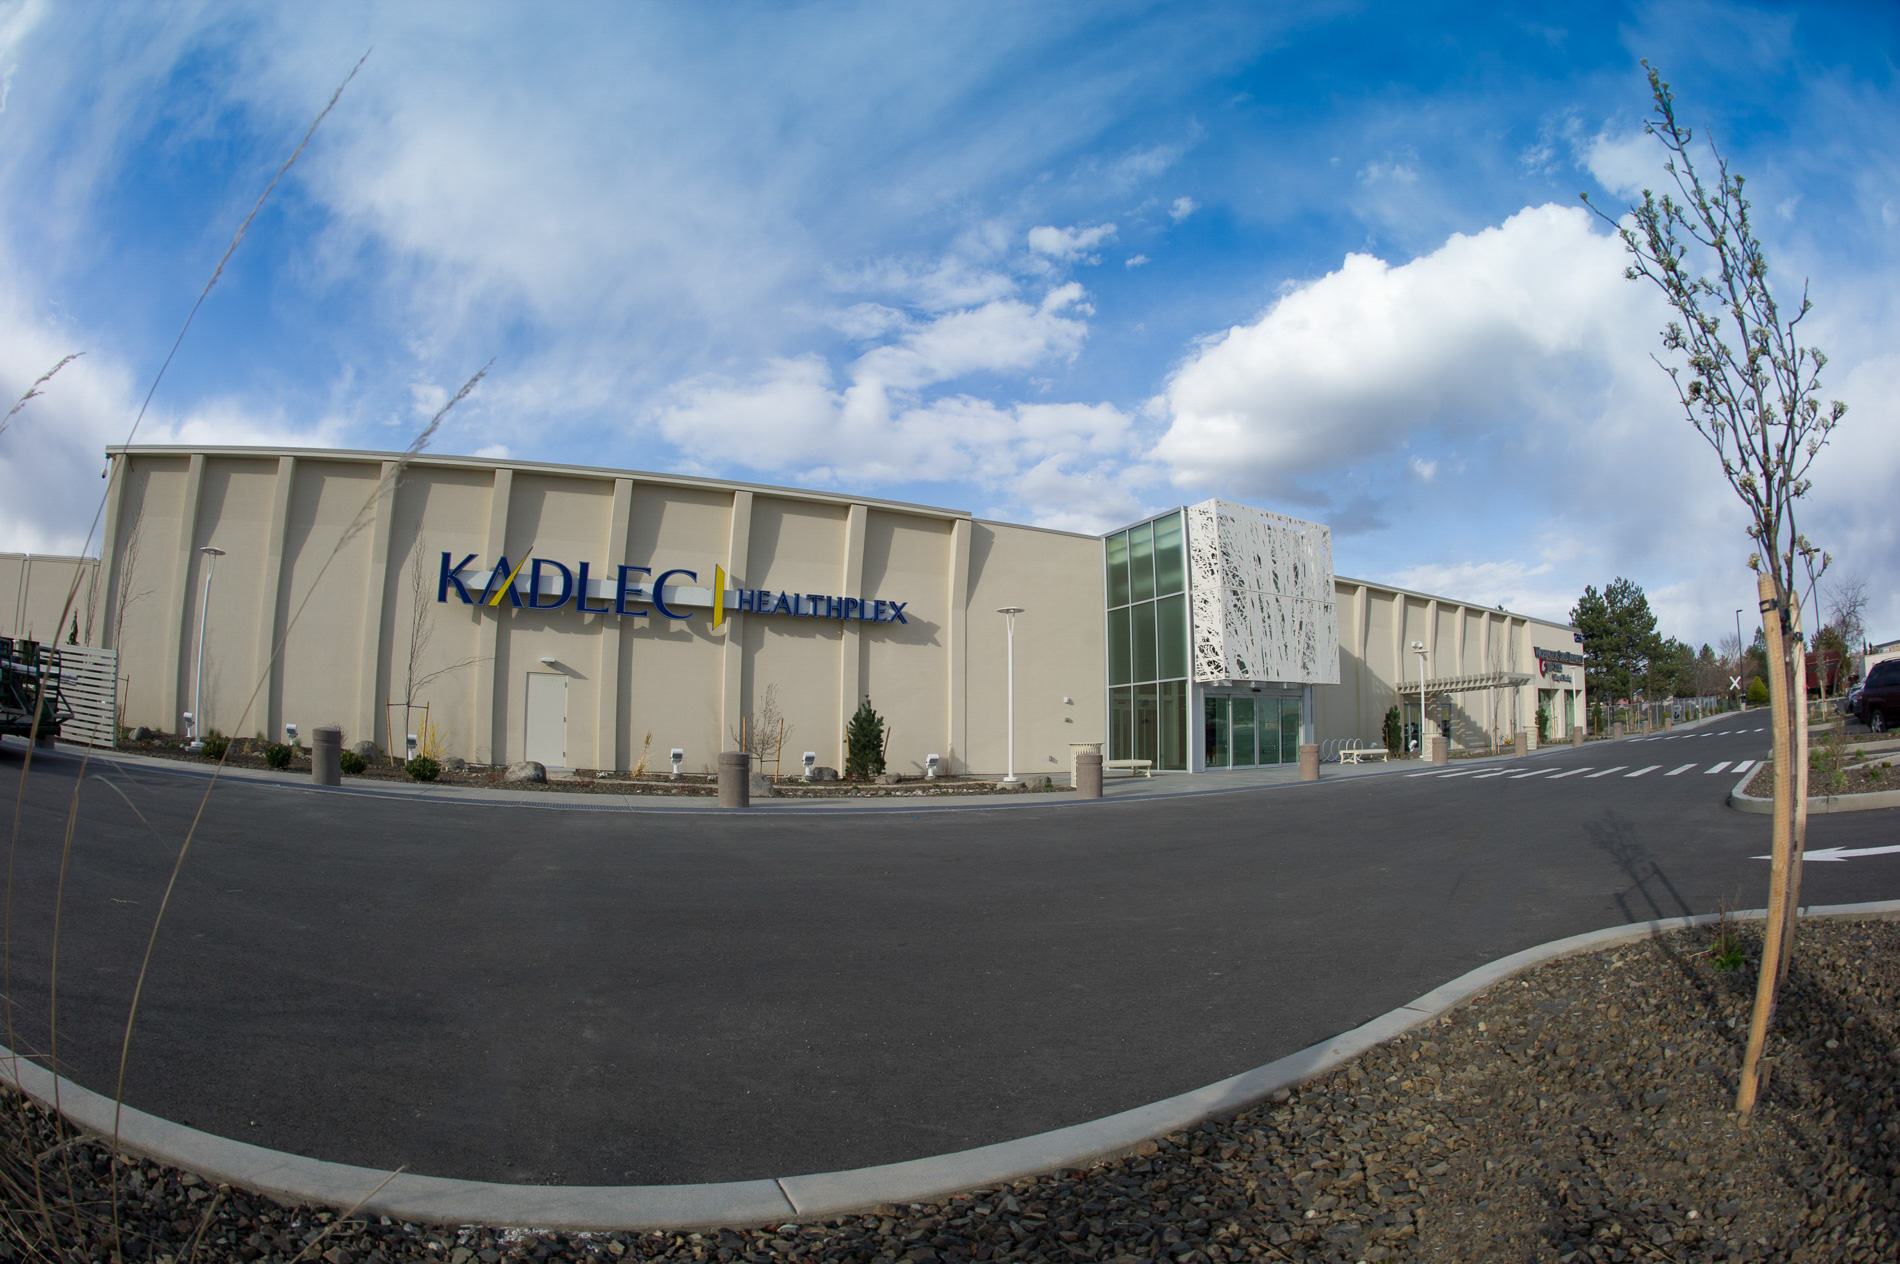 Exterior of Kadlec Healthplex